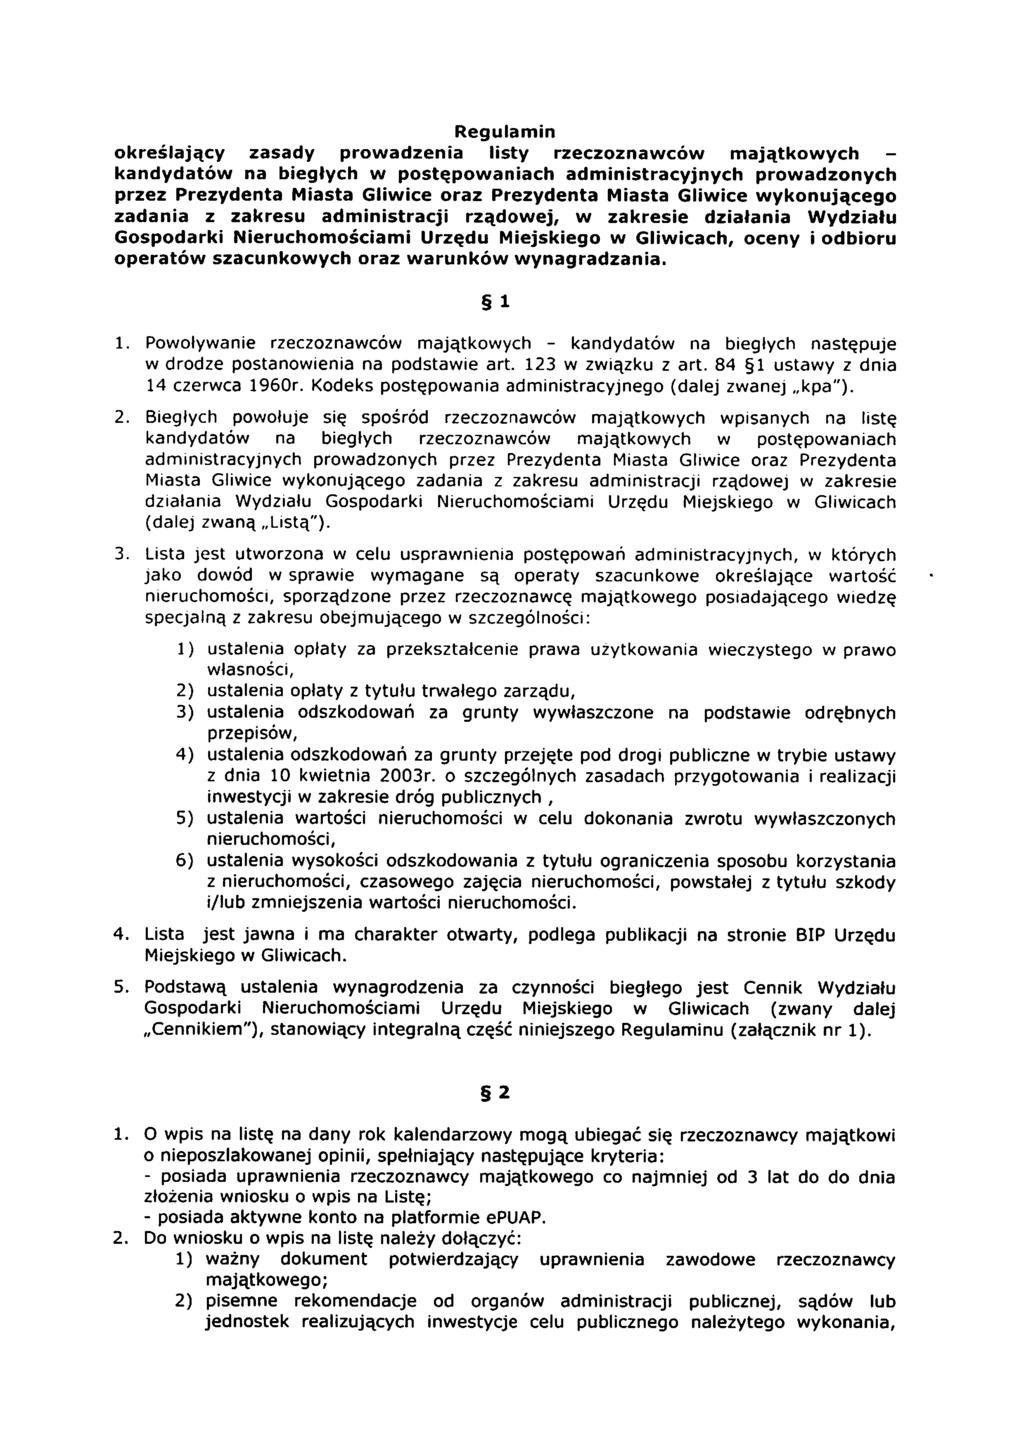 Regulamin określający zasady prowadzenia listy rzeczoznawców majątkowych - kandydatów na biegłych w postępowaniach administracyjnych prowadzonych przez Prezydenta Miasta Gliwice oraz Prezydenta